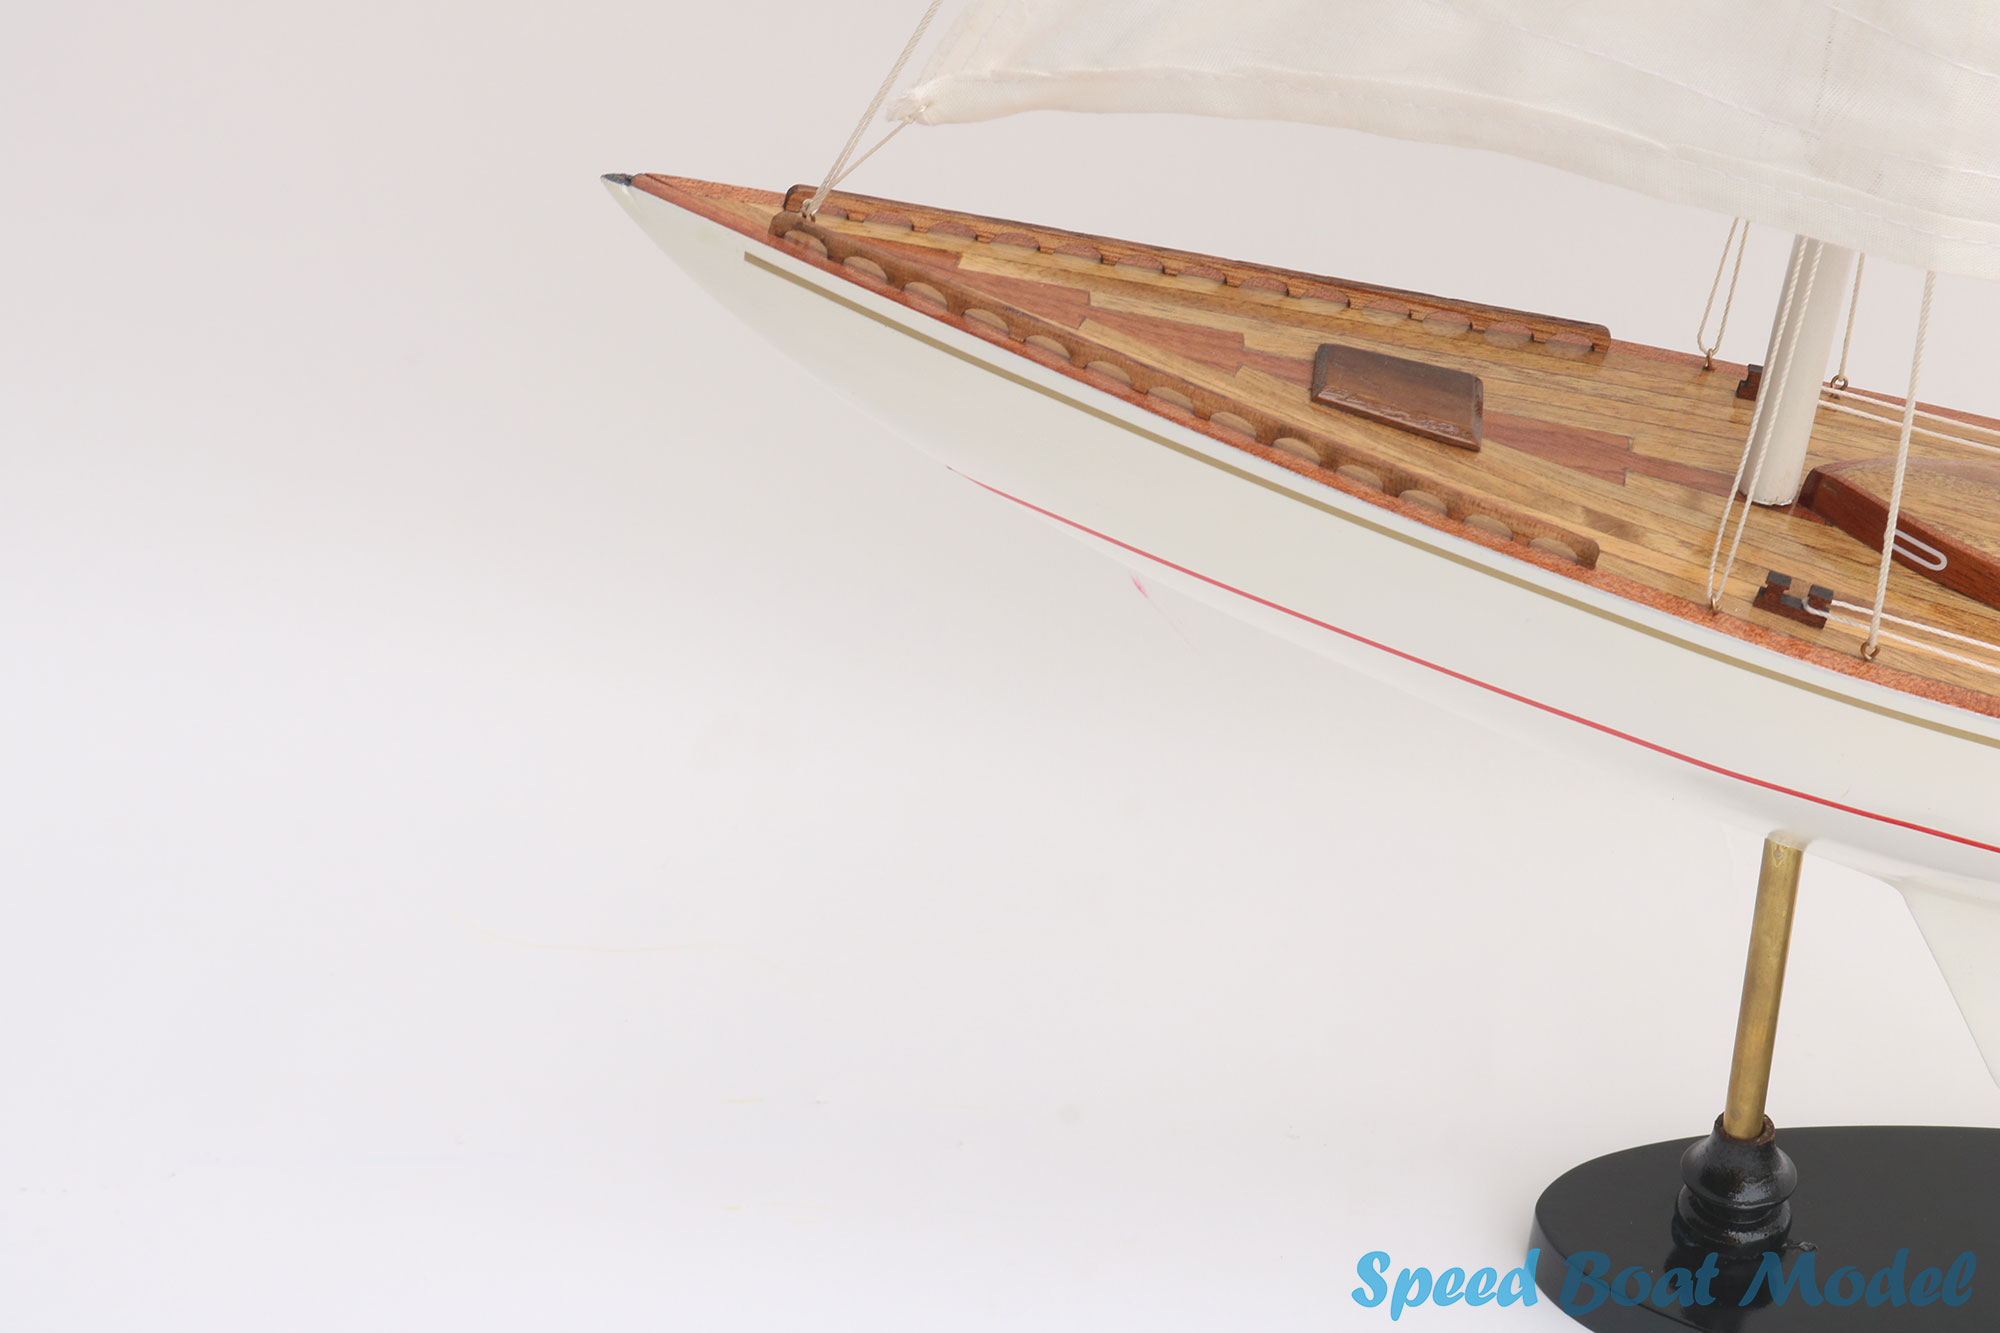 Bijou Sailing Boat Model 23.6"